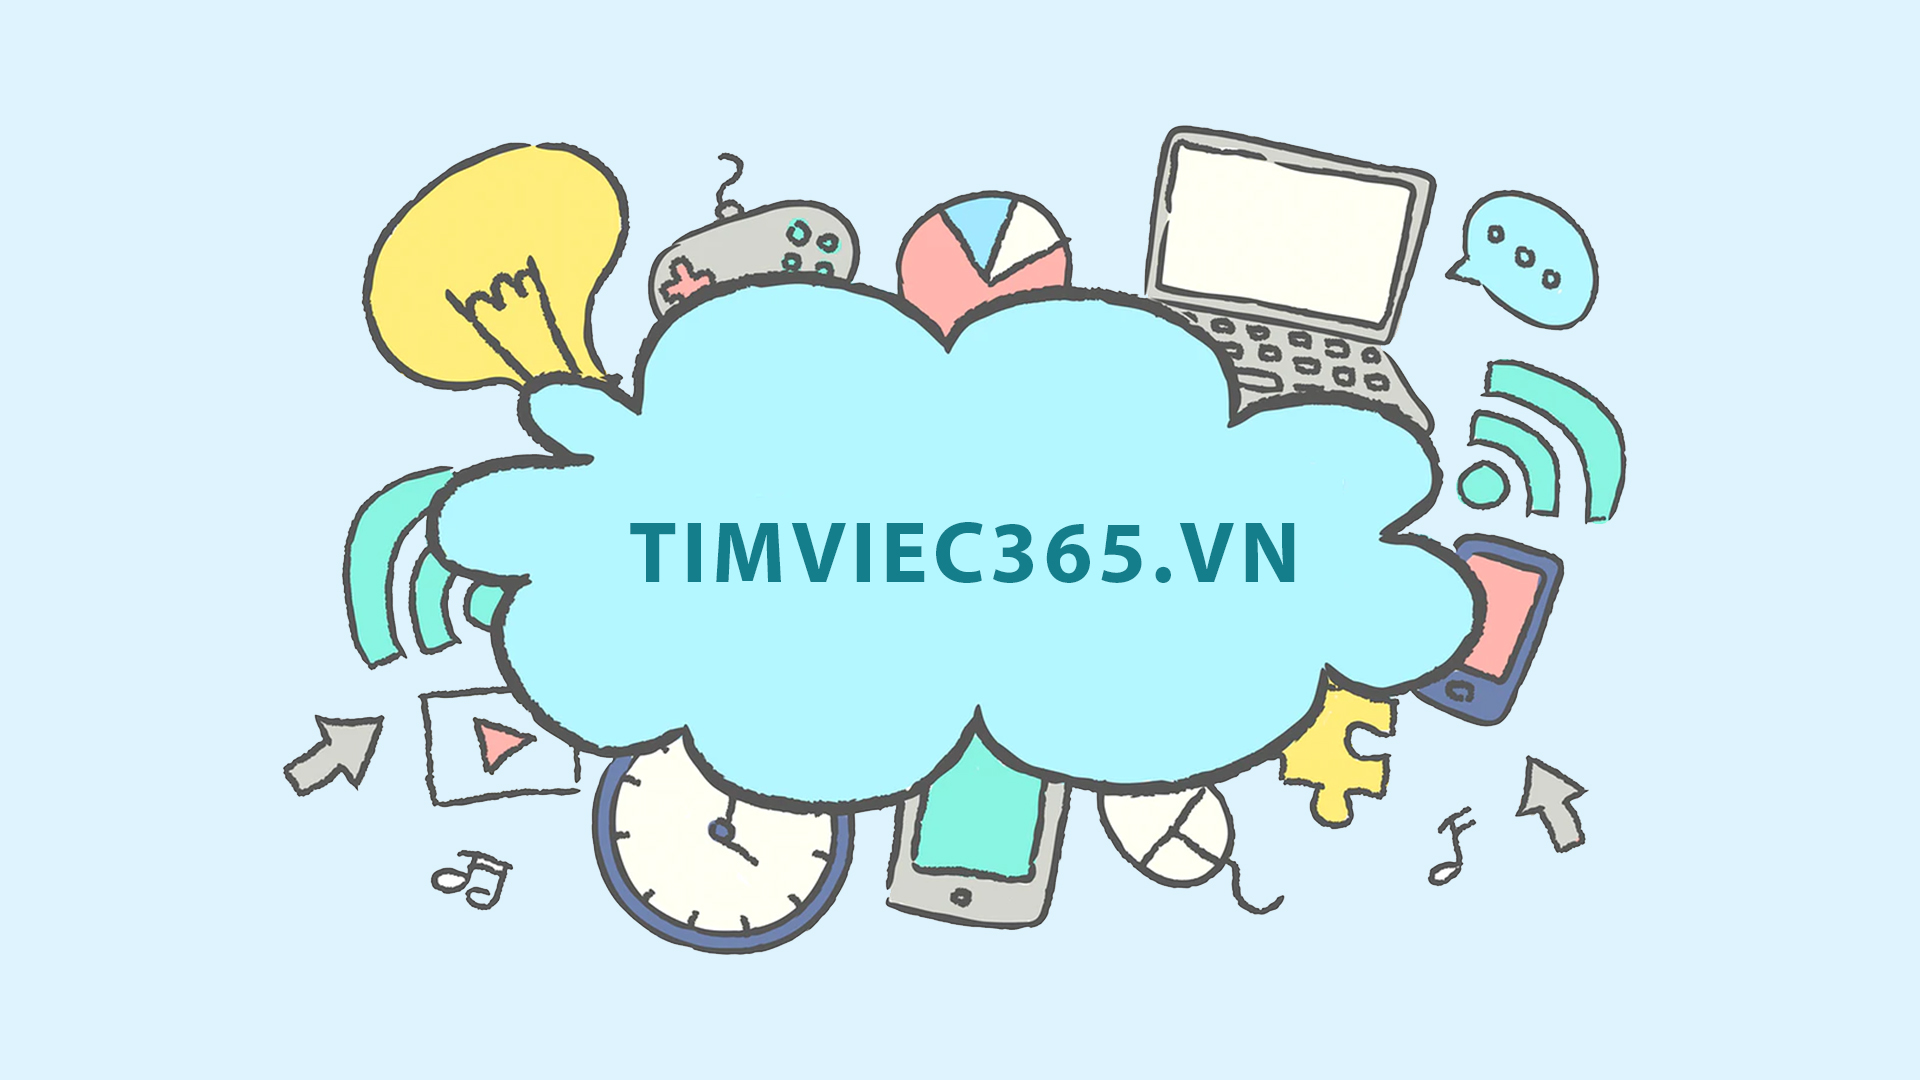 Tìm việc làm tại huyện Cát Hải dễ dàng hơn với timviec365.vn